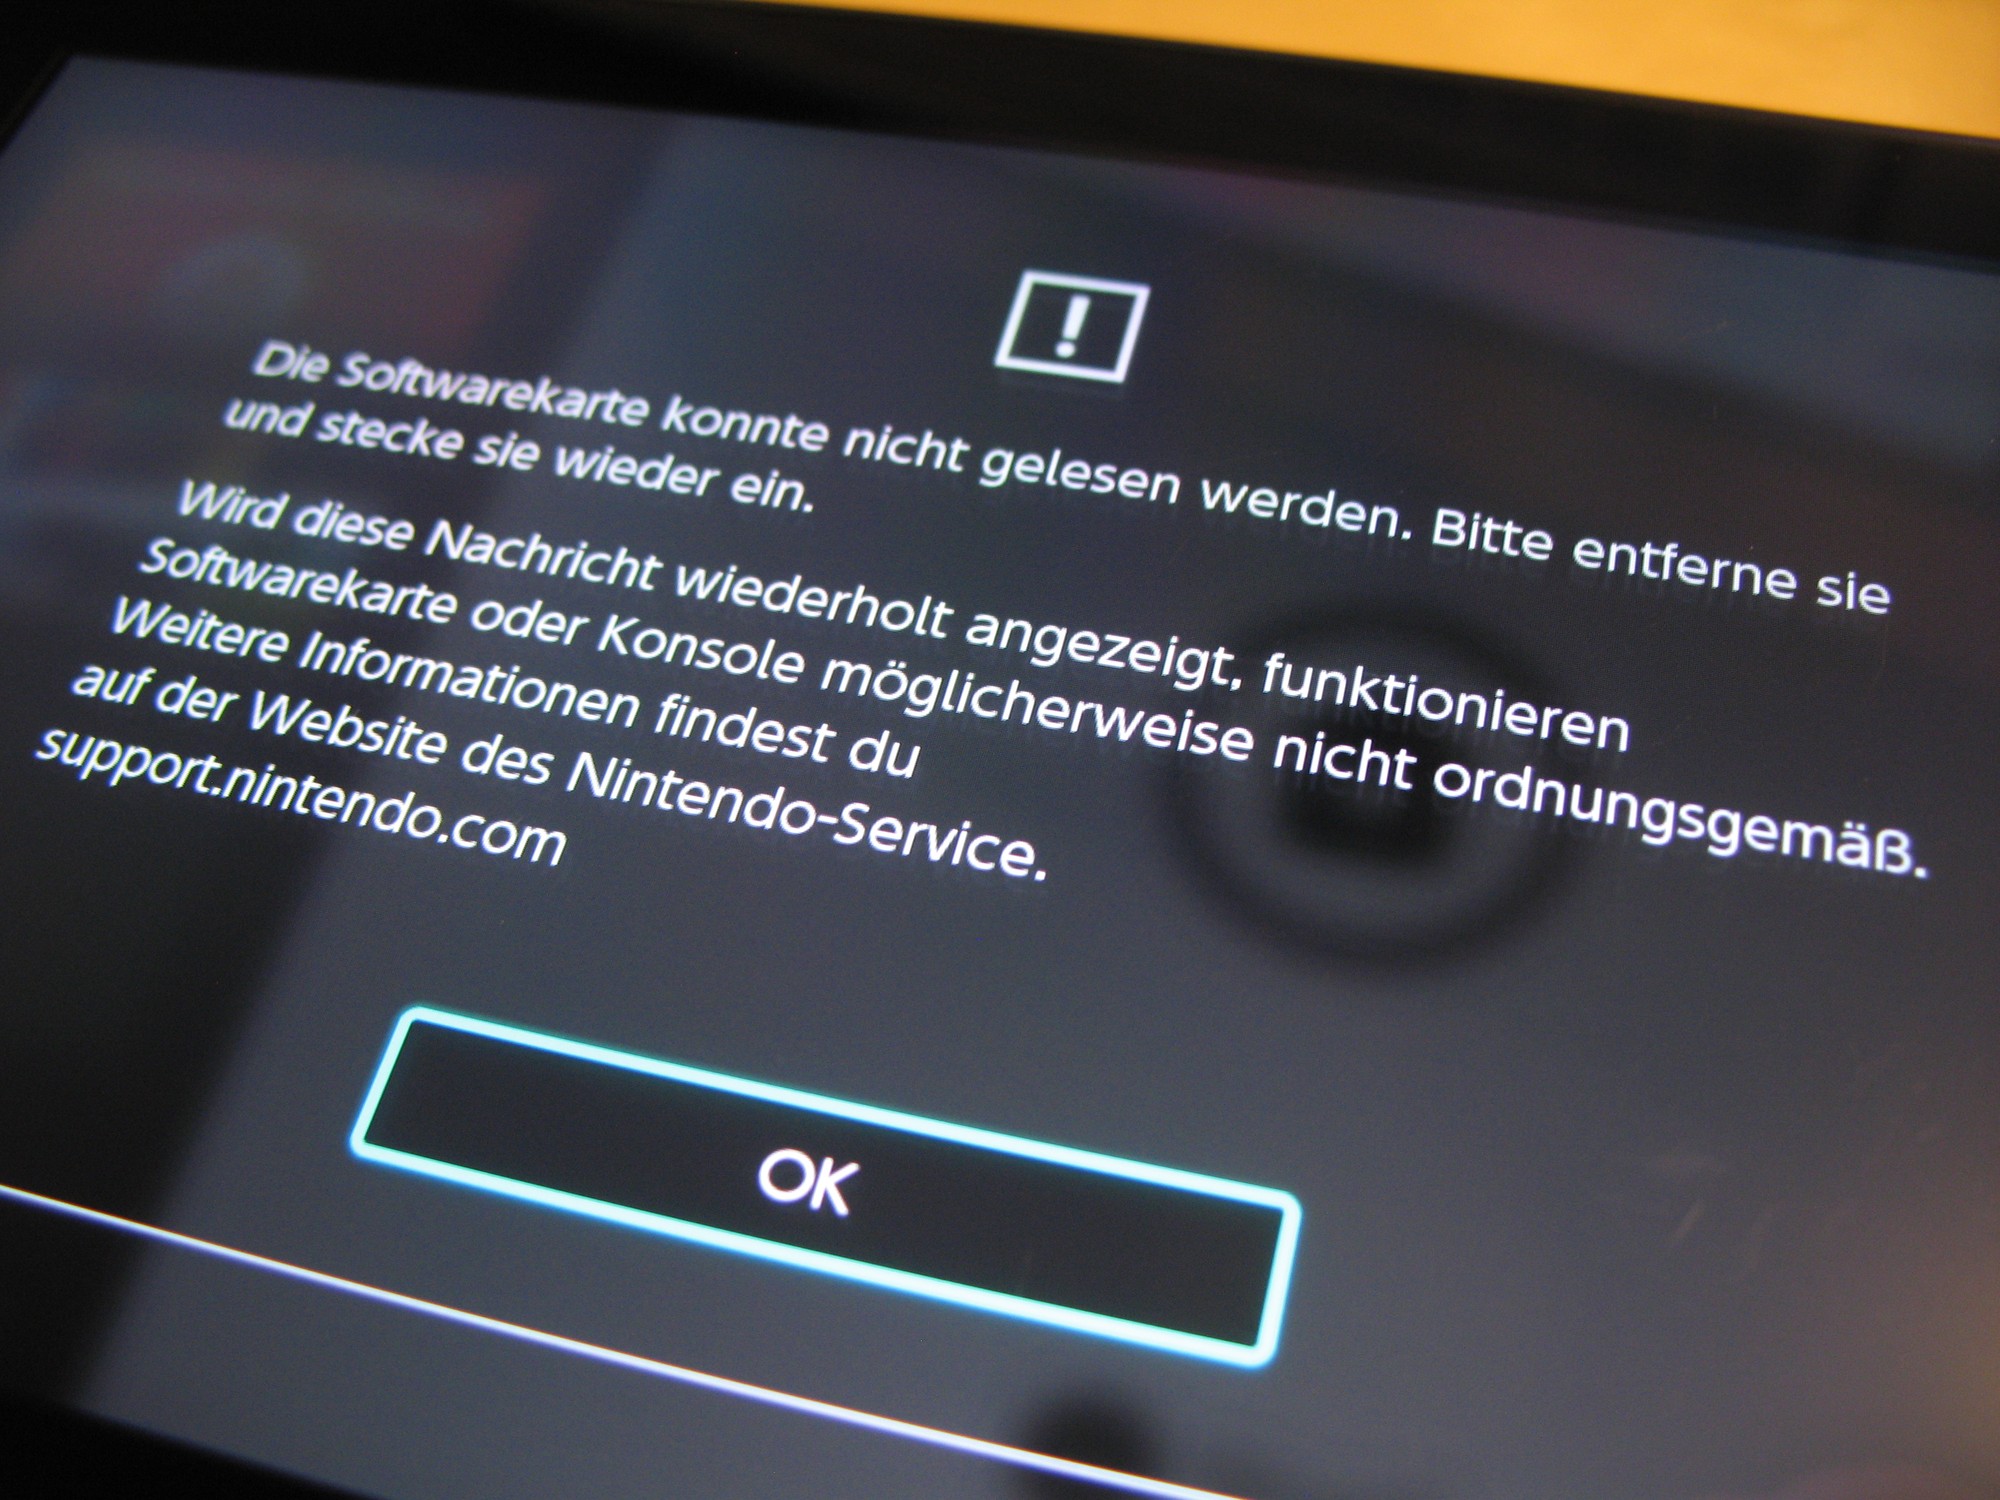 Nintendo Switch kann Softwarekarte nicht mehr lesen